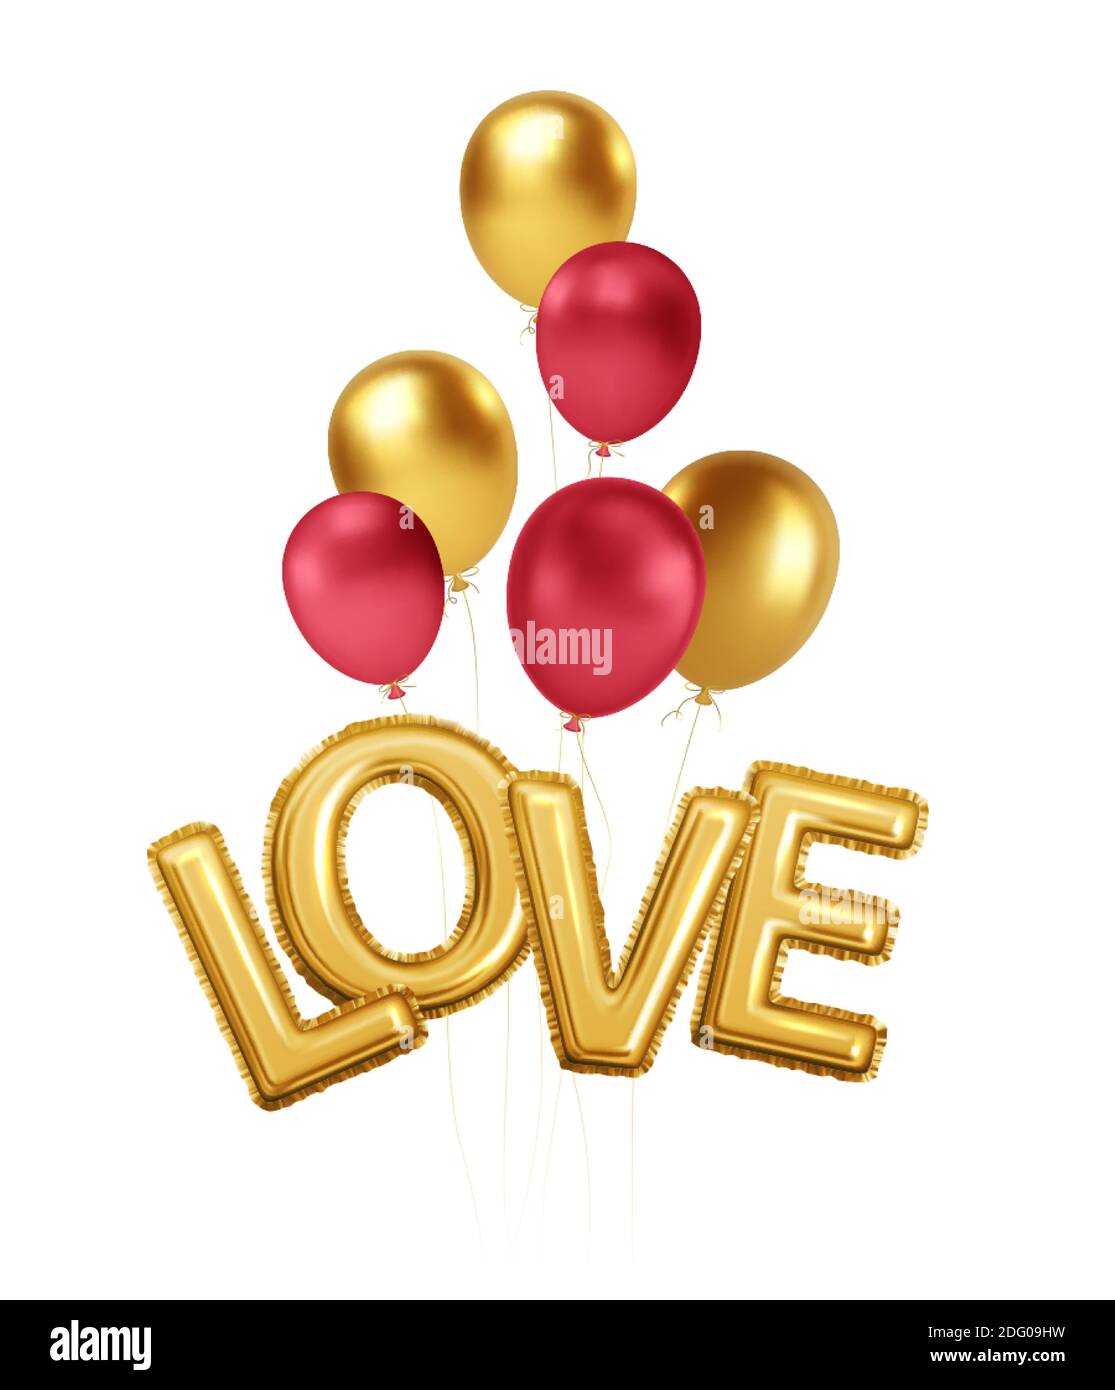 Buon giorno di San Valentino oro e palloncini rossi con l'iscrizione amore da oro palloncini di elio foglio. Per il design festivo di volantino, poster, cartoncino, banner Illustrazione Vettoriale